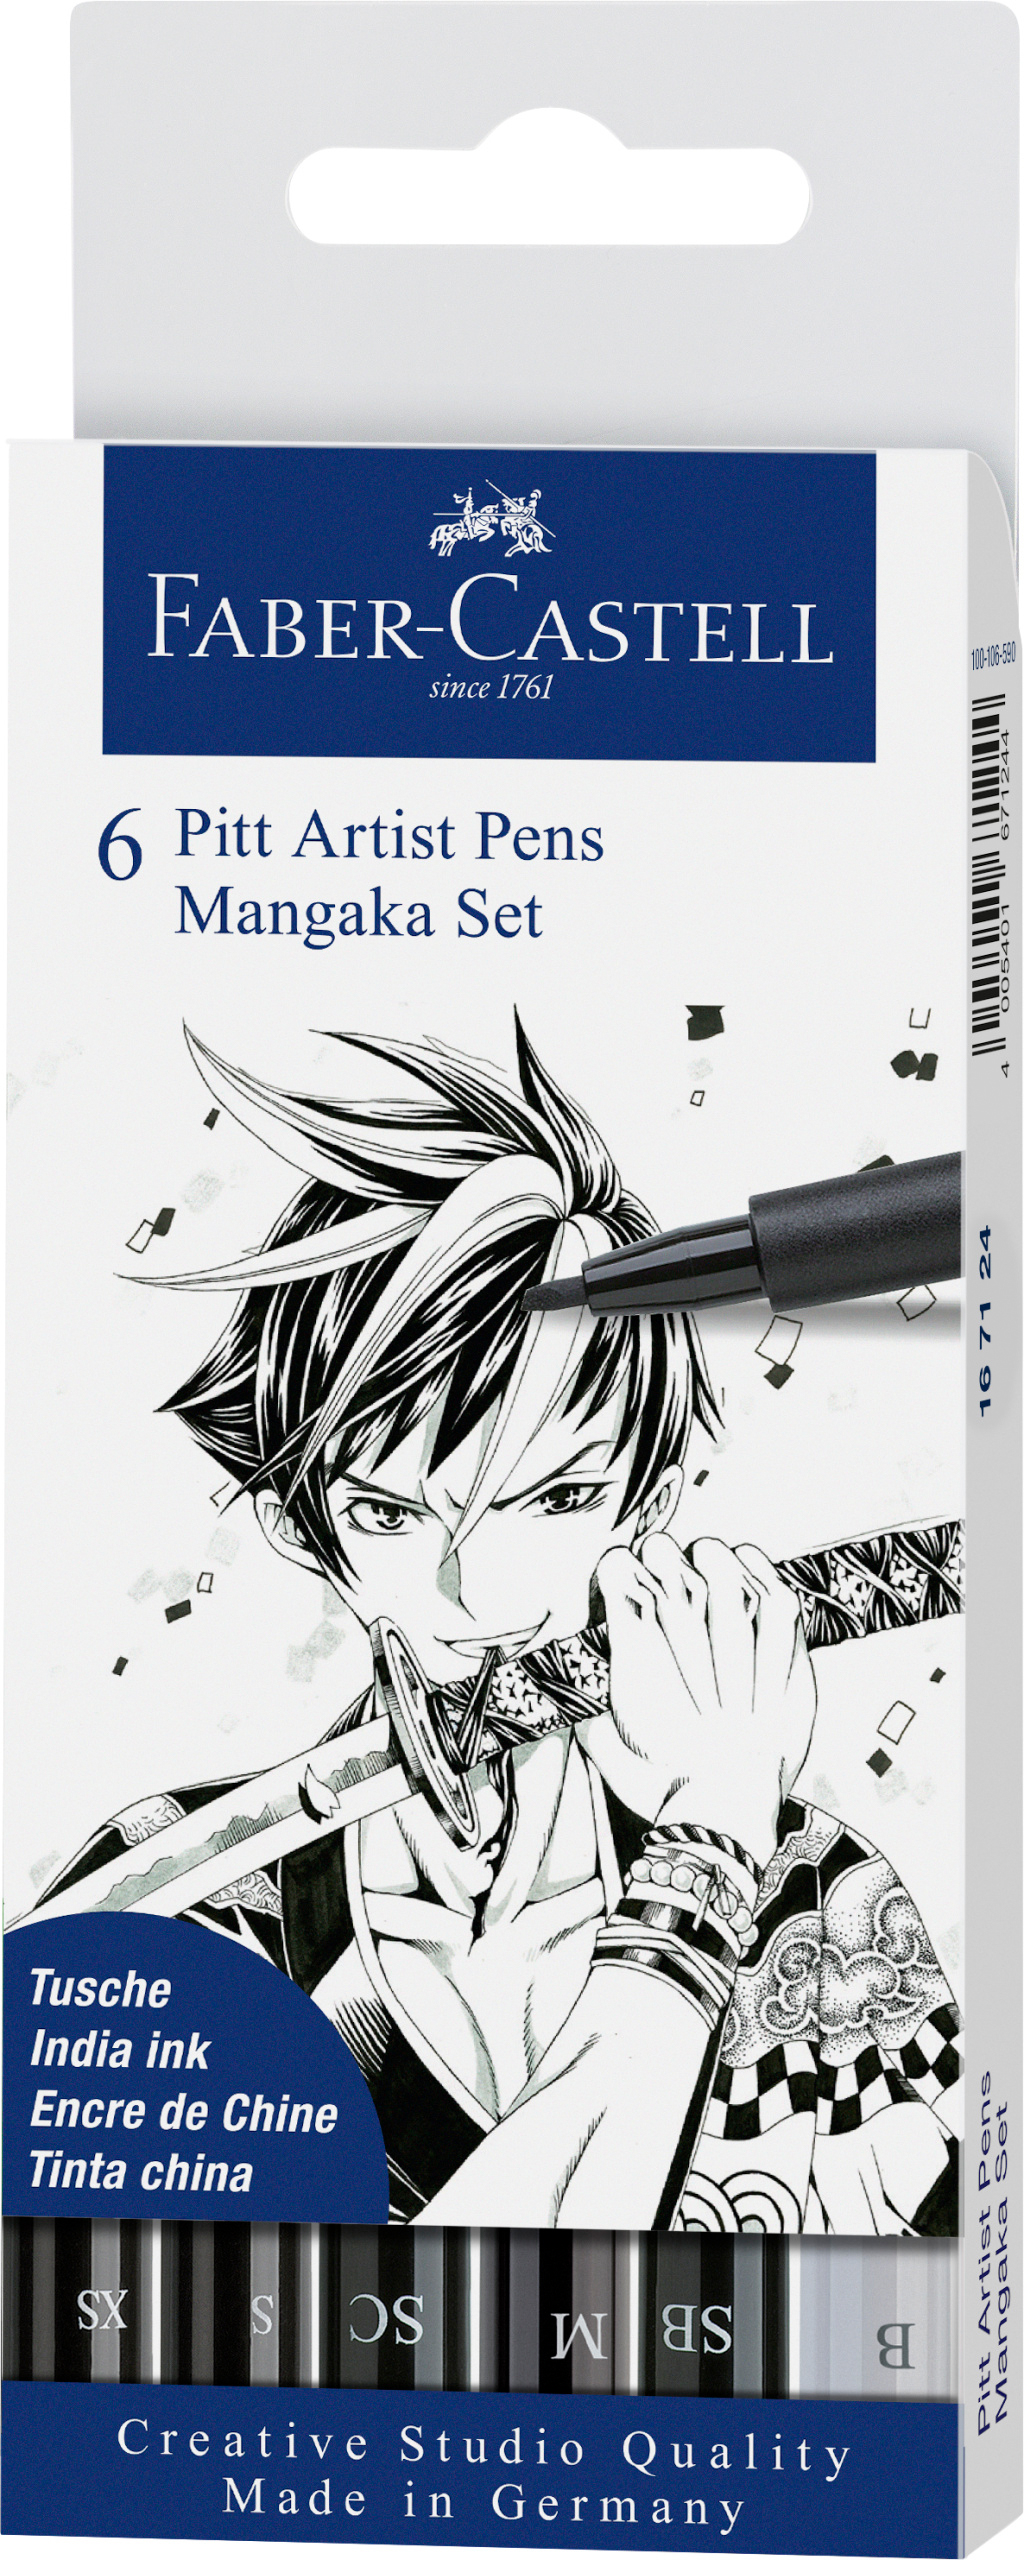 FABER-CASTELL Pitt Artist Pen Manga Mangaka 167124 noir 6 pcs.